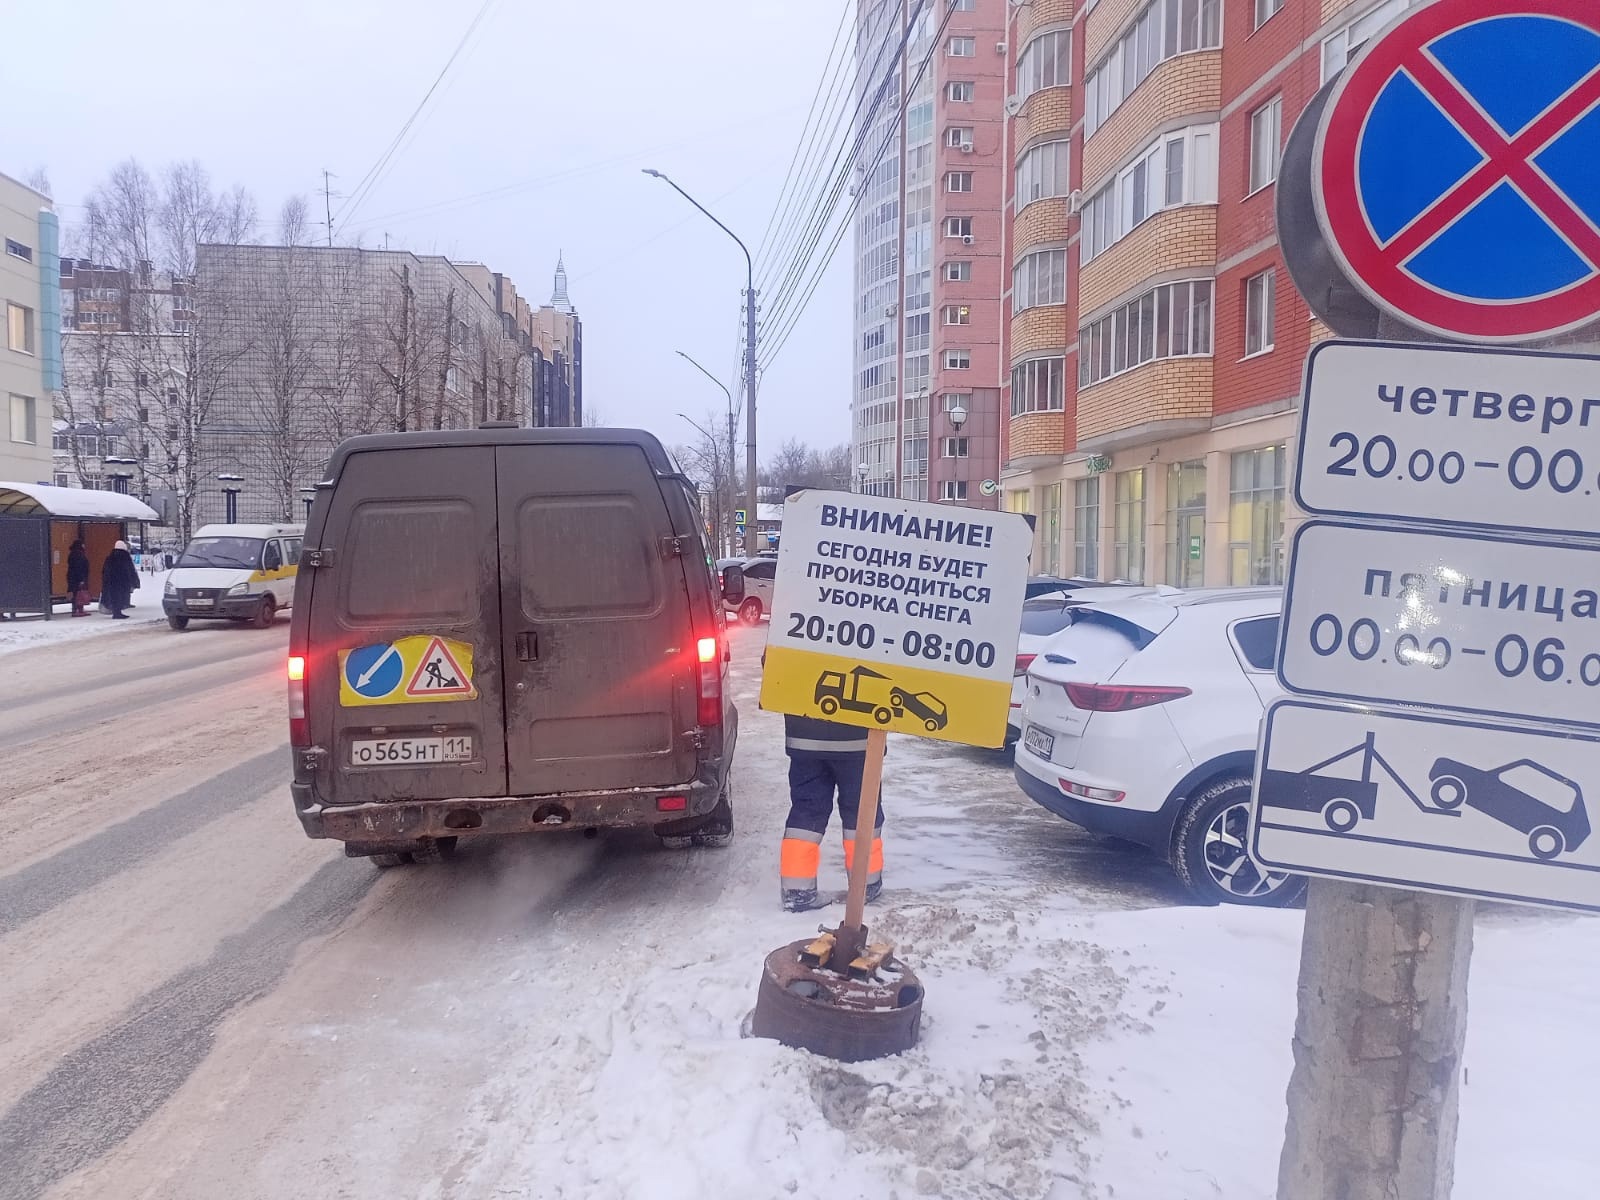 Сыктывкарских автовладельцев призывают убрать машины с оживленной улицы в  центре города | Комиинформ